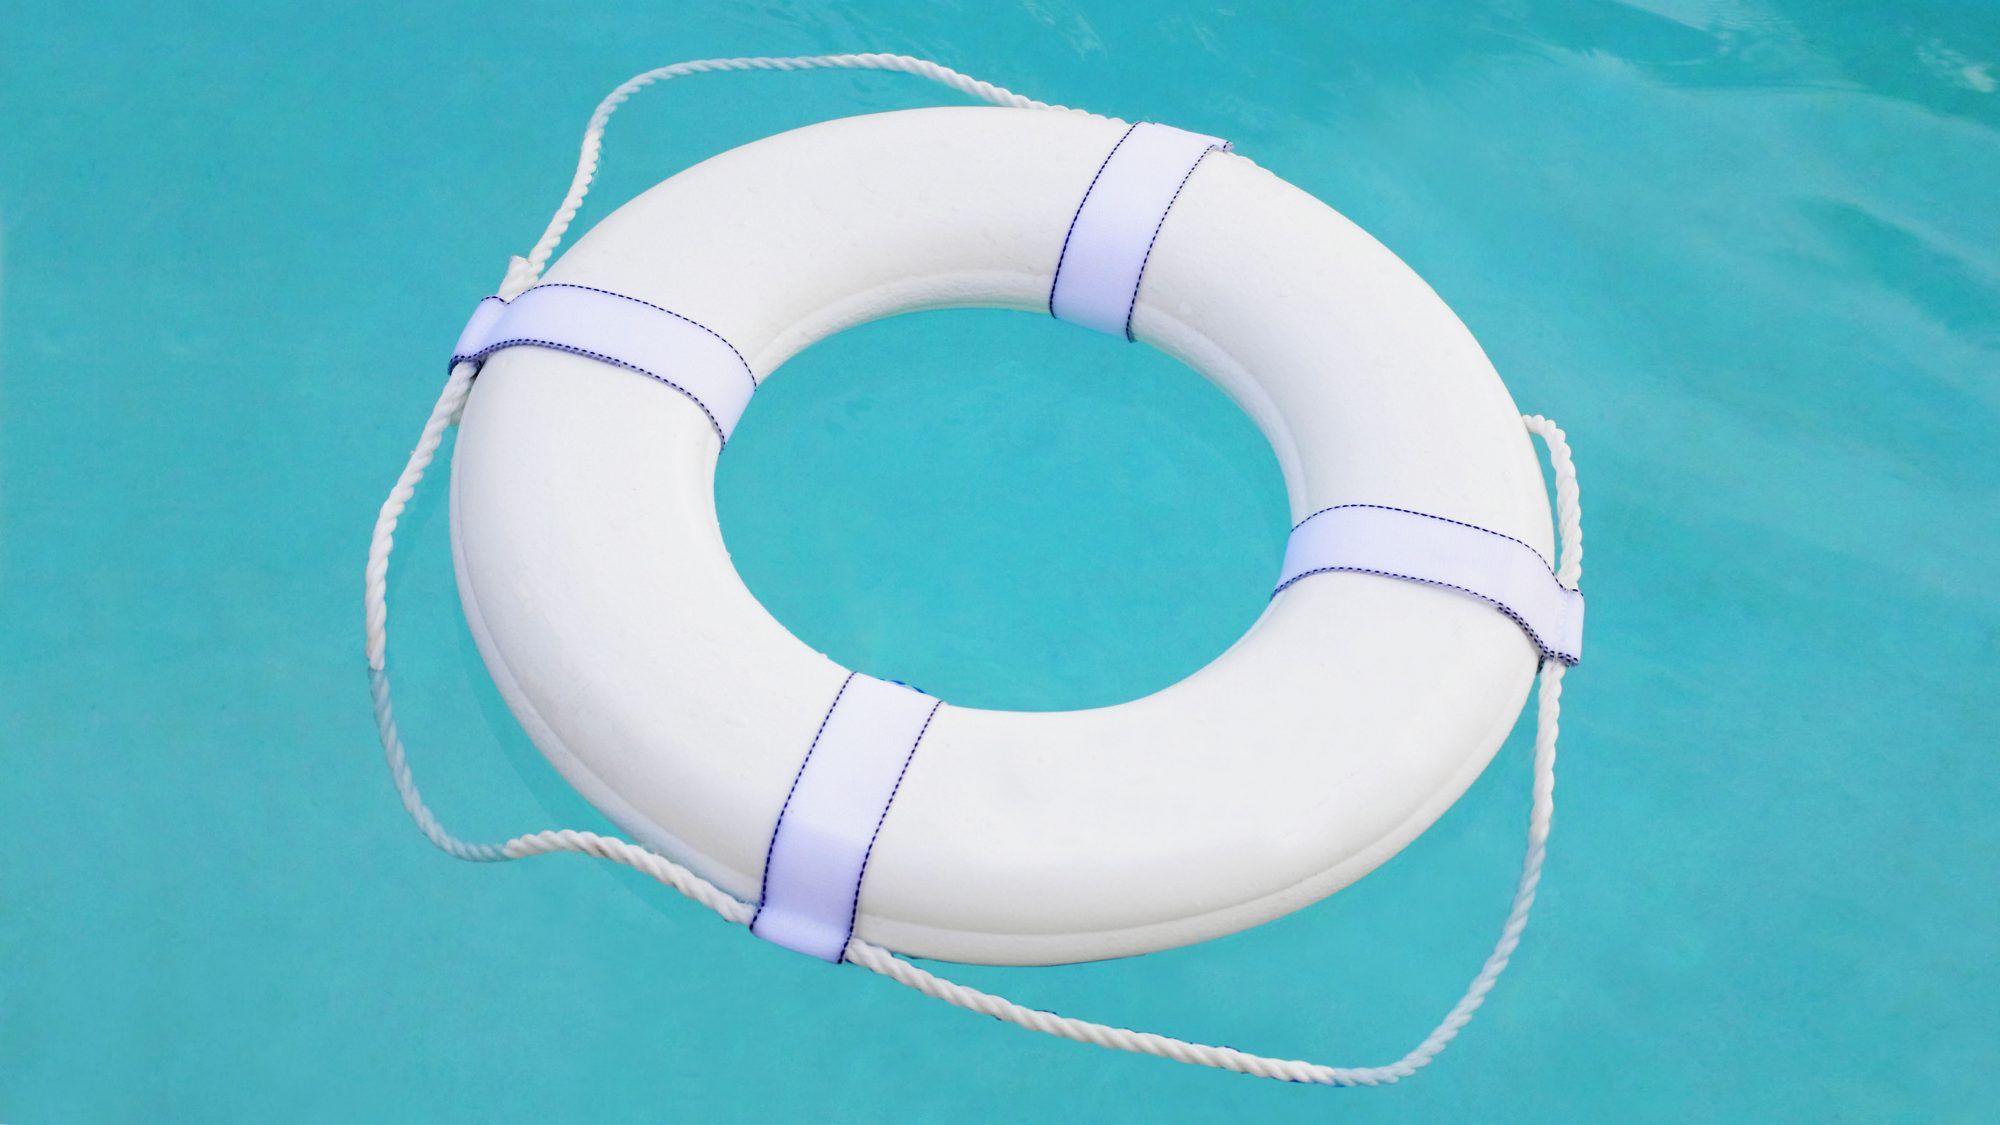 预防与泳池有关的事故和溺水的 15 种简单方法